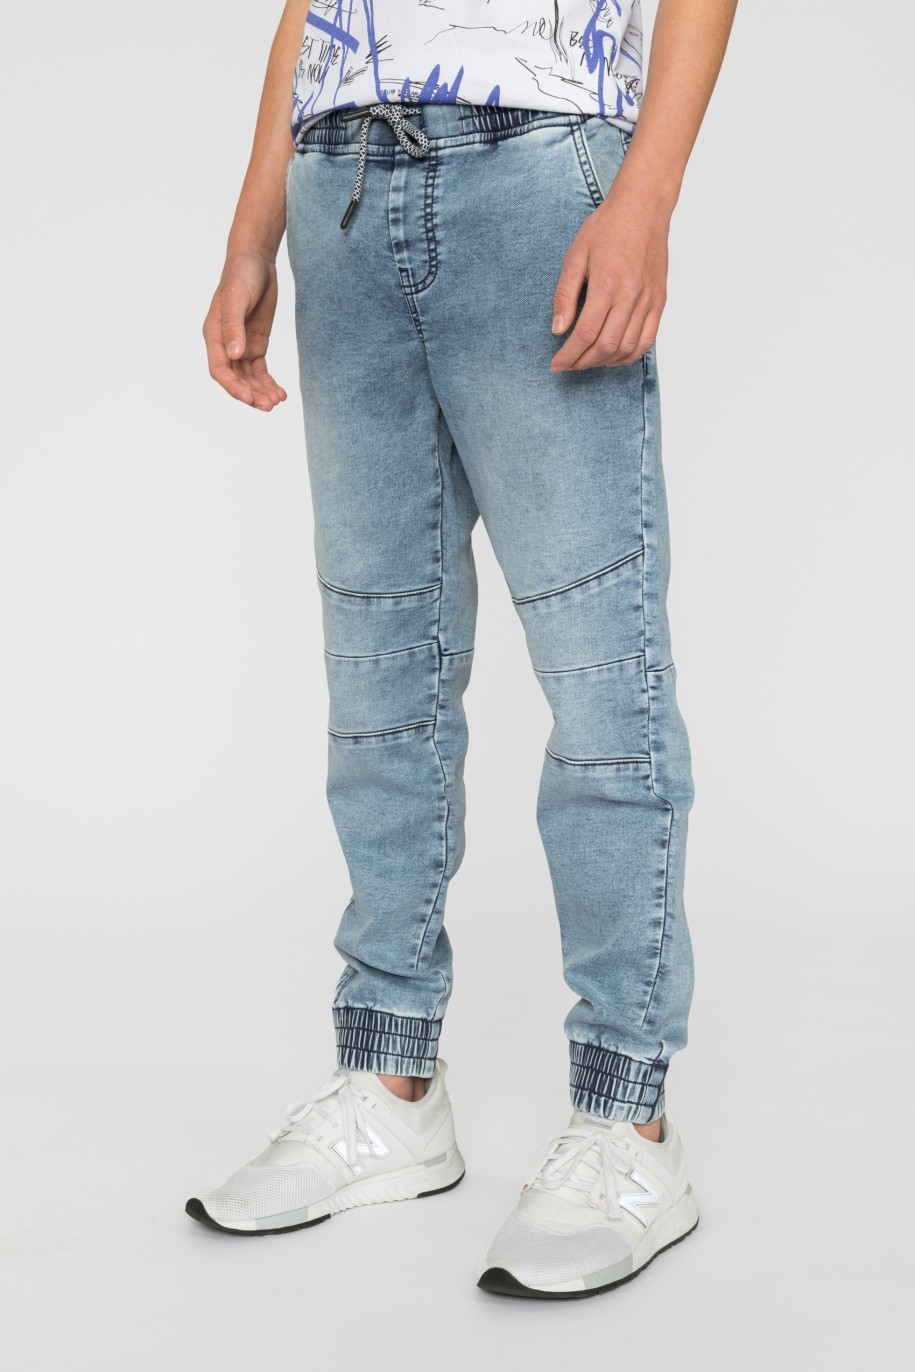 Niebieskie jeansy typu jogger ze ściągaczami dla chłopaka - 33578